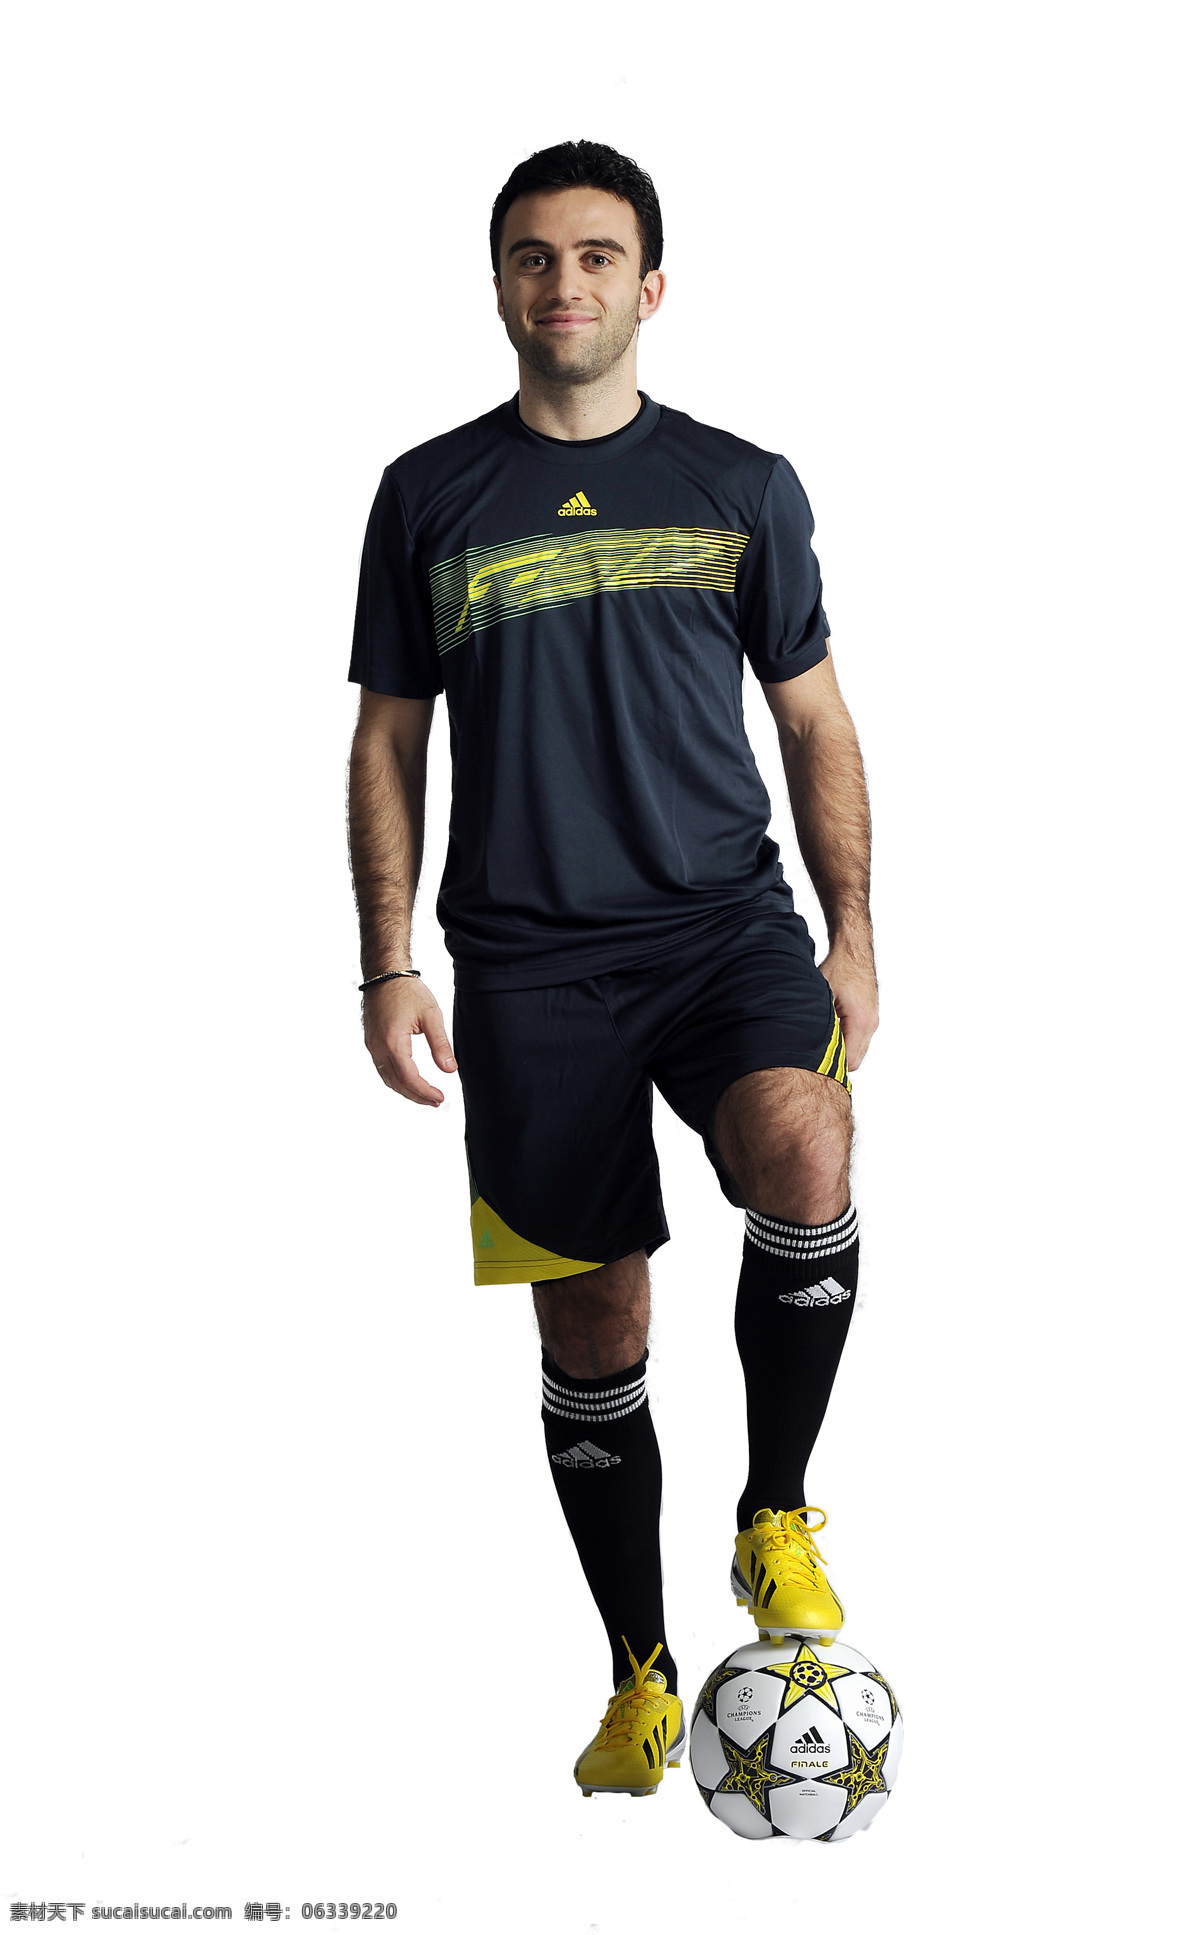 adidas 广告 体育运动 文化艺术 宣传 足球队 队服 矢量图 日常生活